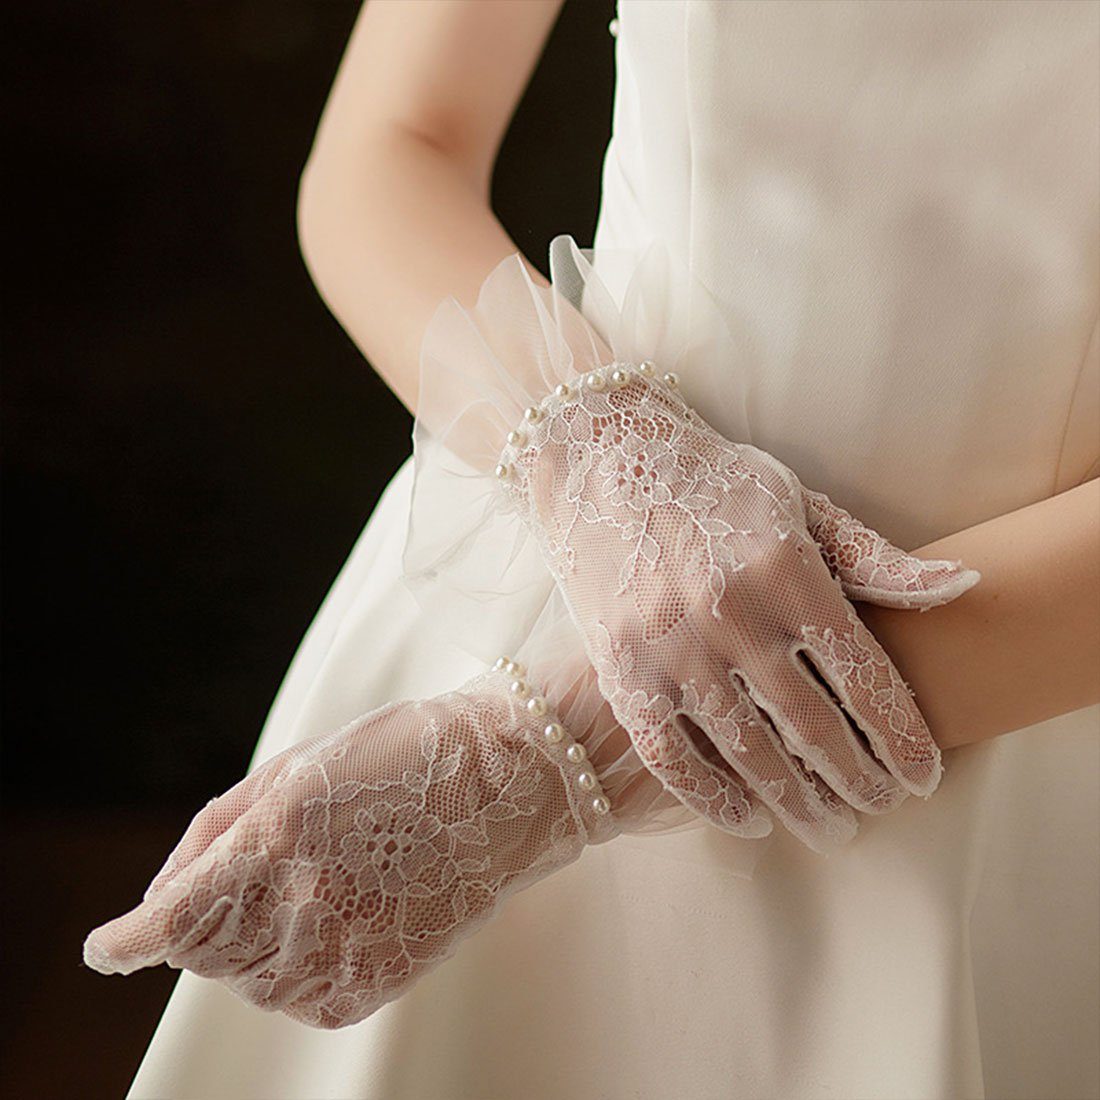 Spitzenhandschuhe Perlen französische Weiße mit Hochzeitshandschuhe, DÖRÖY Abendhandschuhe